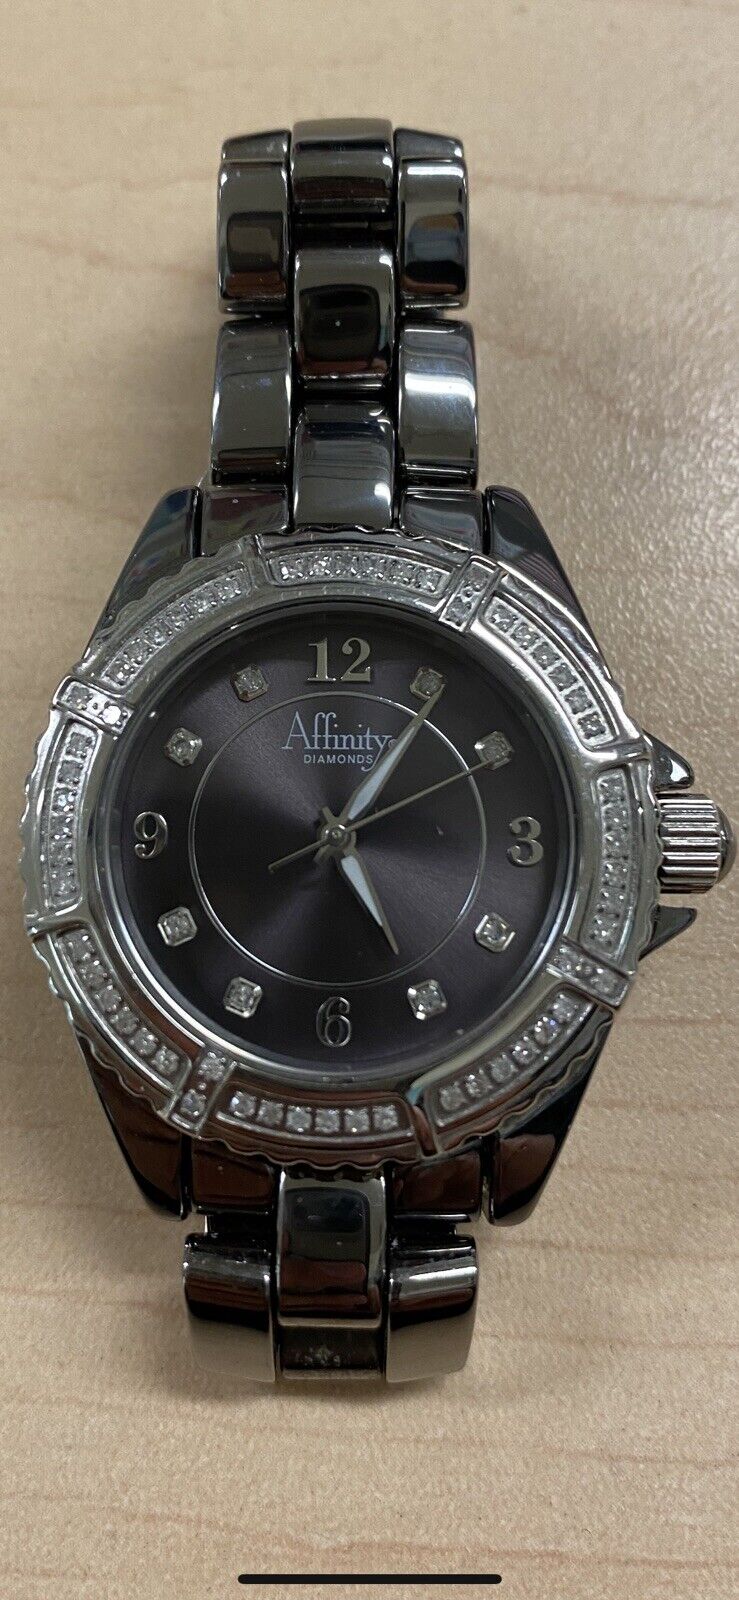 Affinity Women's Luxury w/Diamond Bezel & Dial Watch Swiss Parts Ceramic Case